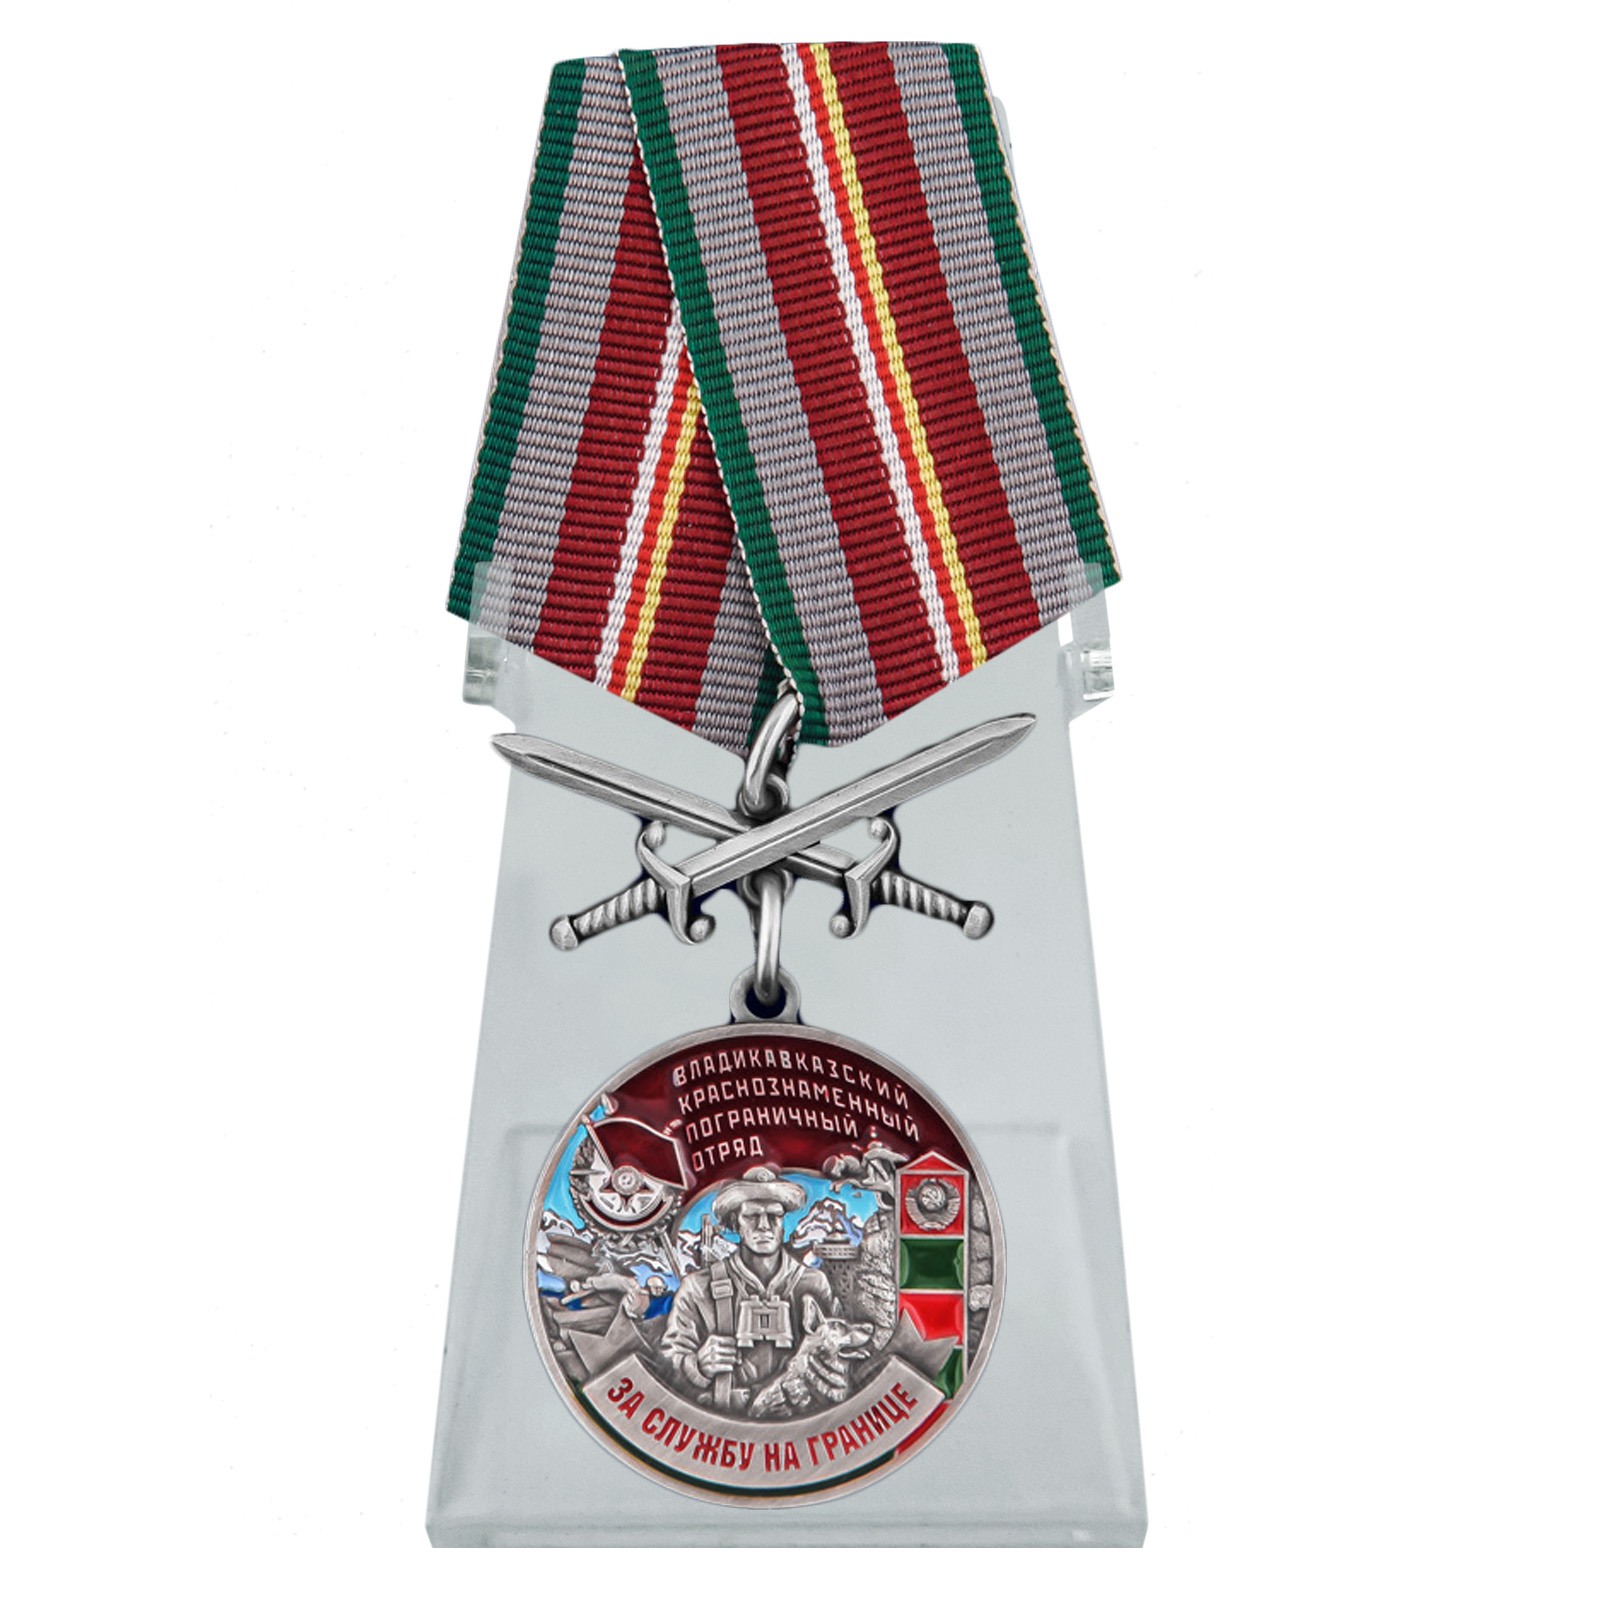 Медаль "За службу во Владикавказском погранотряде" на подставке